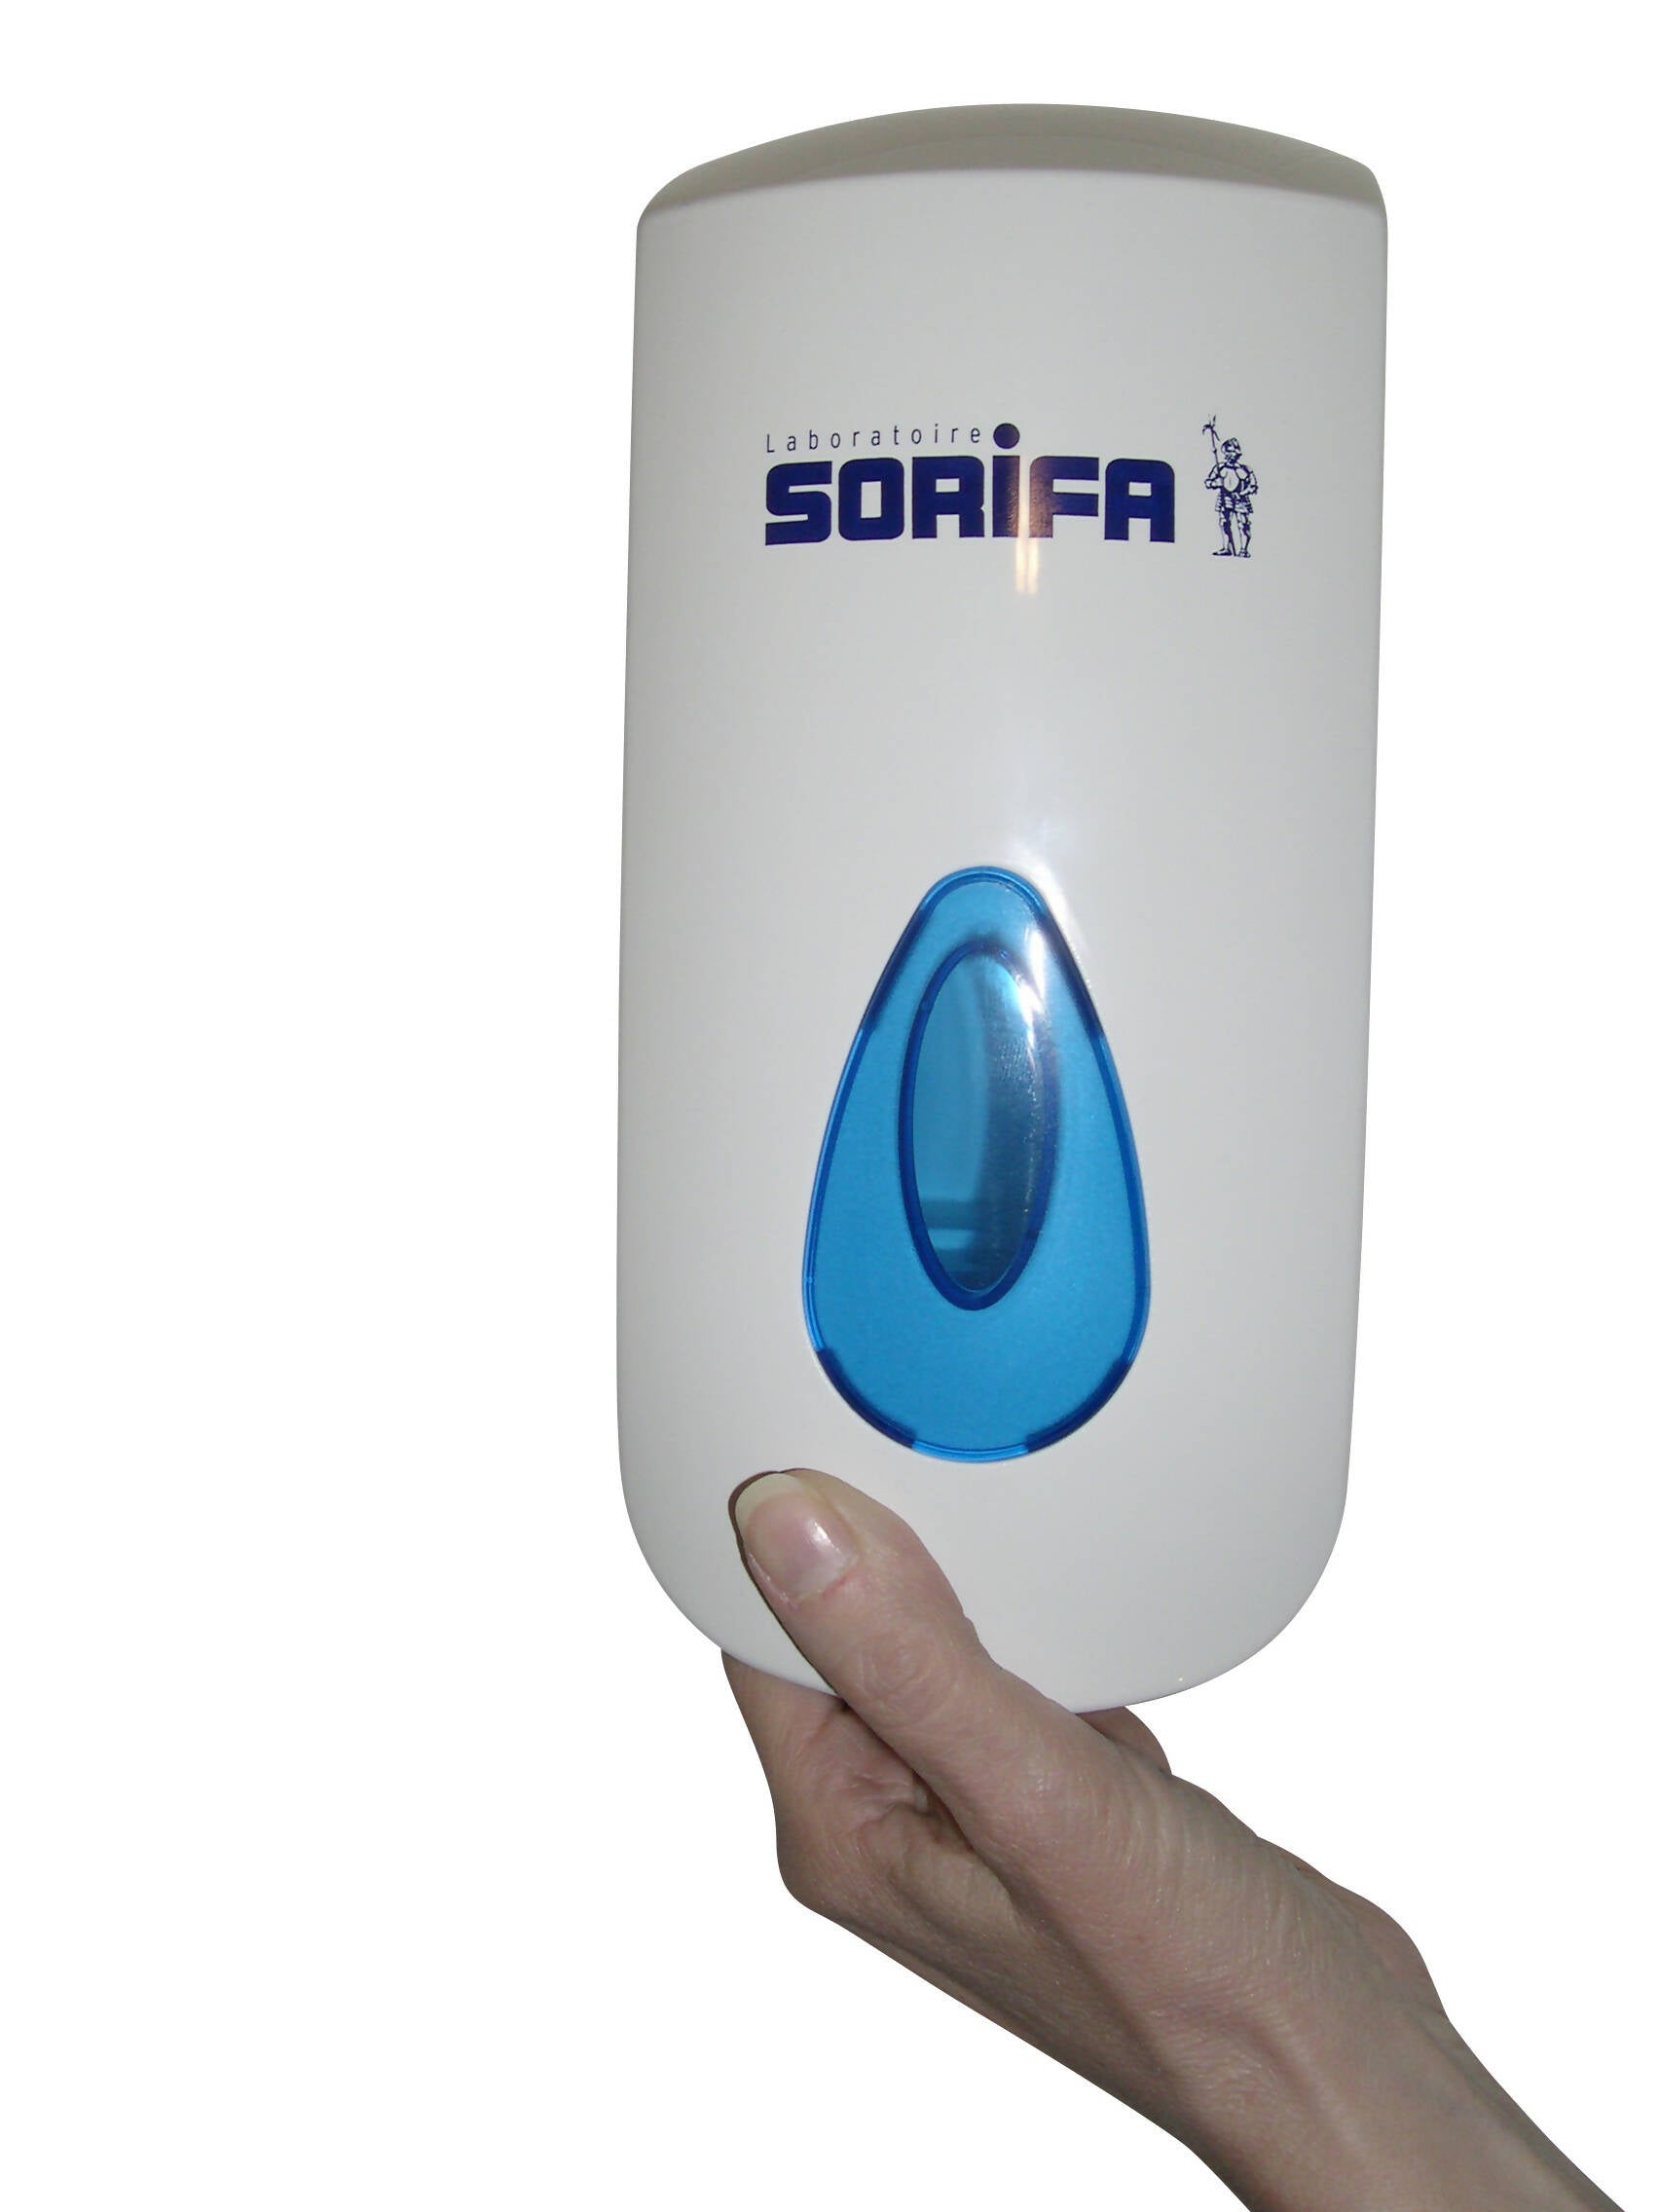 SORIFA - Lot de 2 - Distributeur mural métallique robuste, ergonomique, verrouillable pour flacon 1L de marque SORIFA - Pour gels et savons liquides.